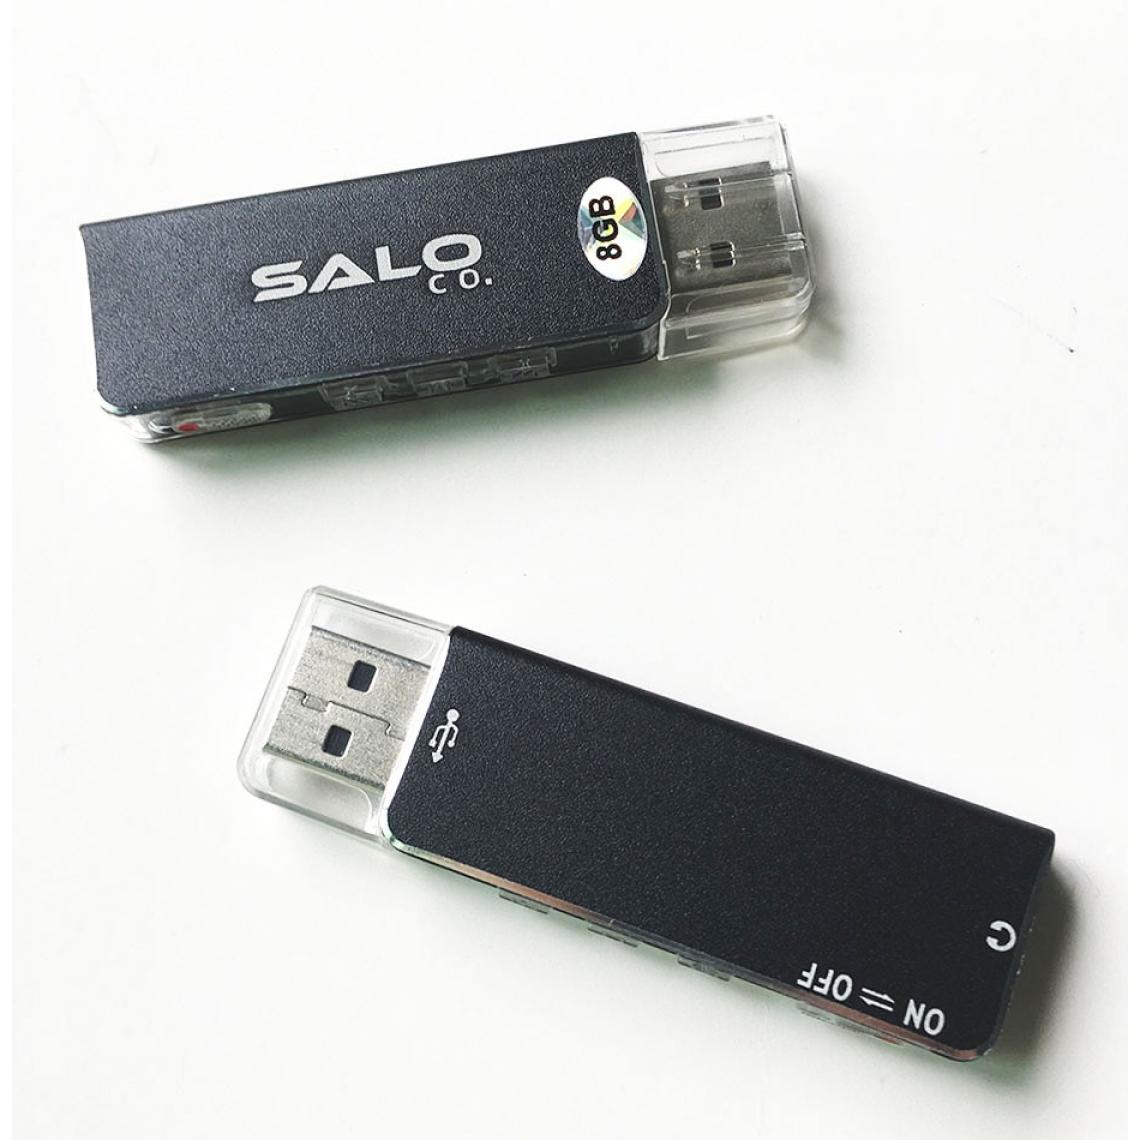 Universal - 003 Nouveau mini 8 Go USB Driver Digital Audio Recorder U Flash Disk Recorder | Digital Audio Recorder | Recorder - Enregistreur audio numérique